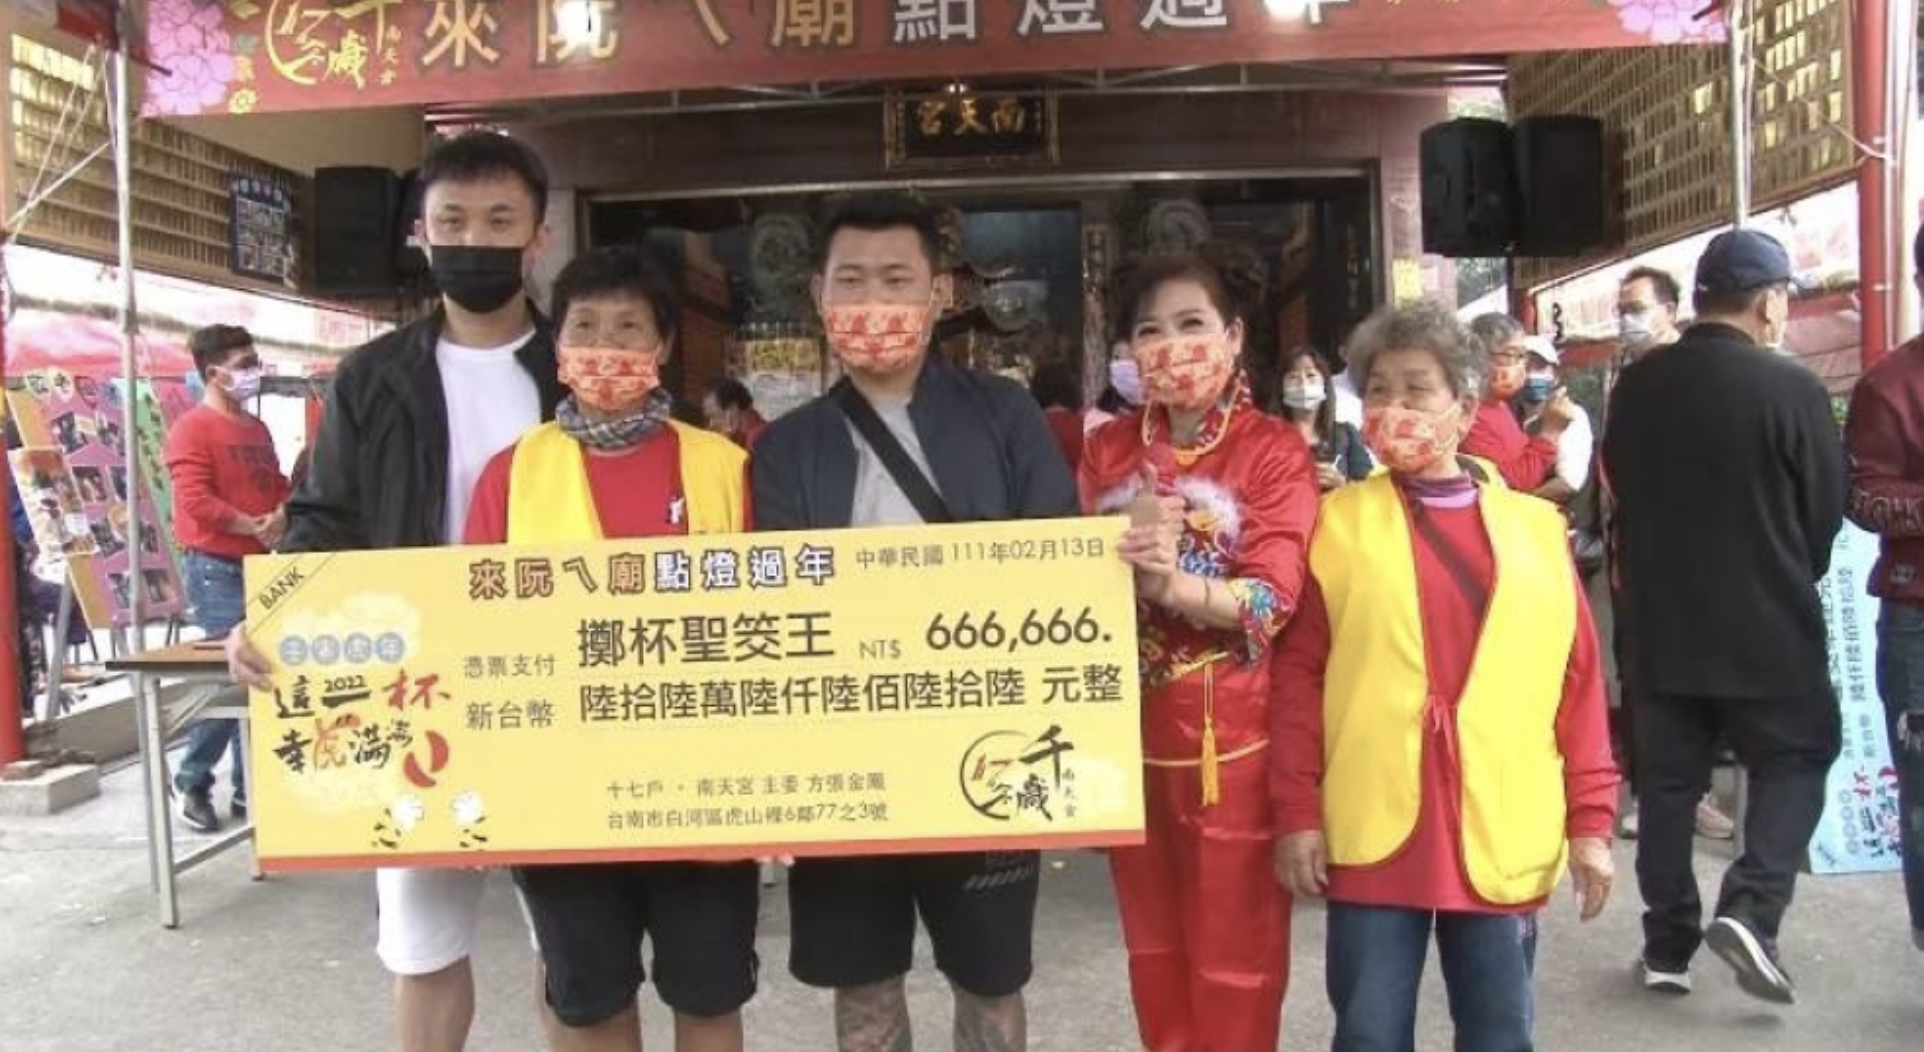 Sang juara, Chen Bai Fan (陳柏帆) yang berhasil memenangkan hadiah uang sejumlah 666,666 NTD. Sumber: 4 Way Voice